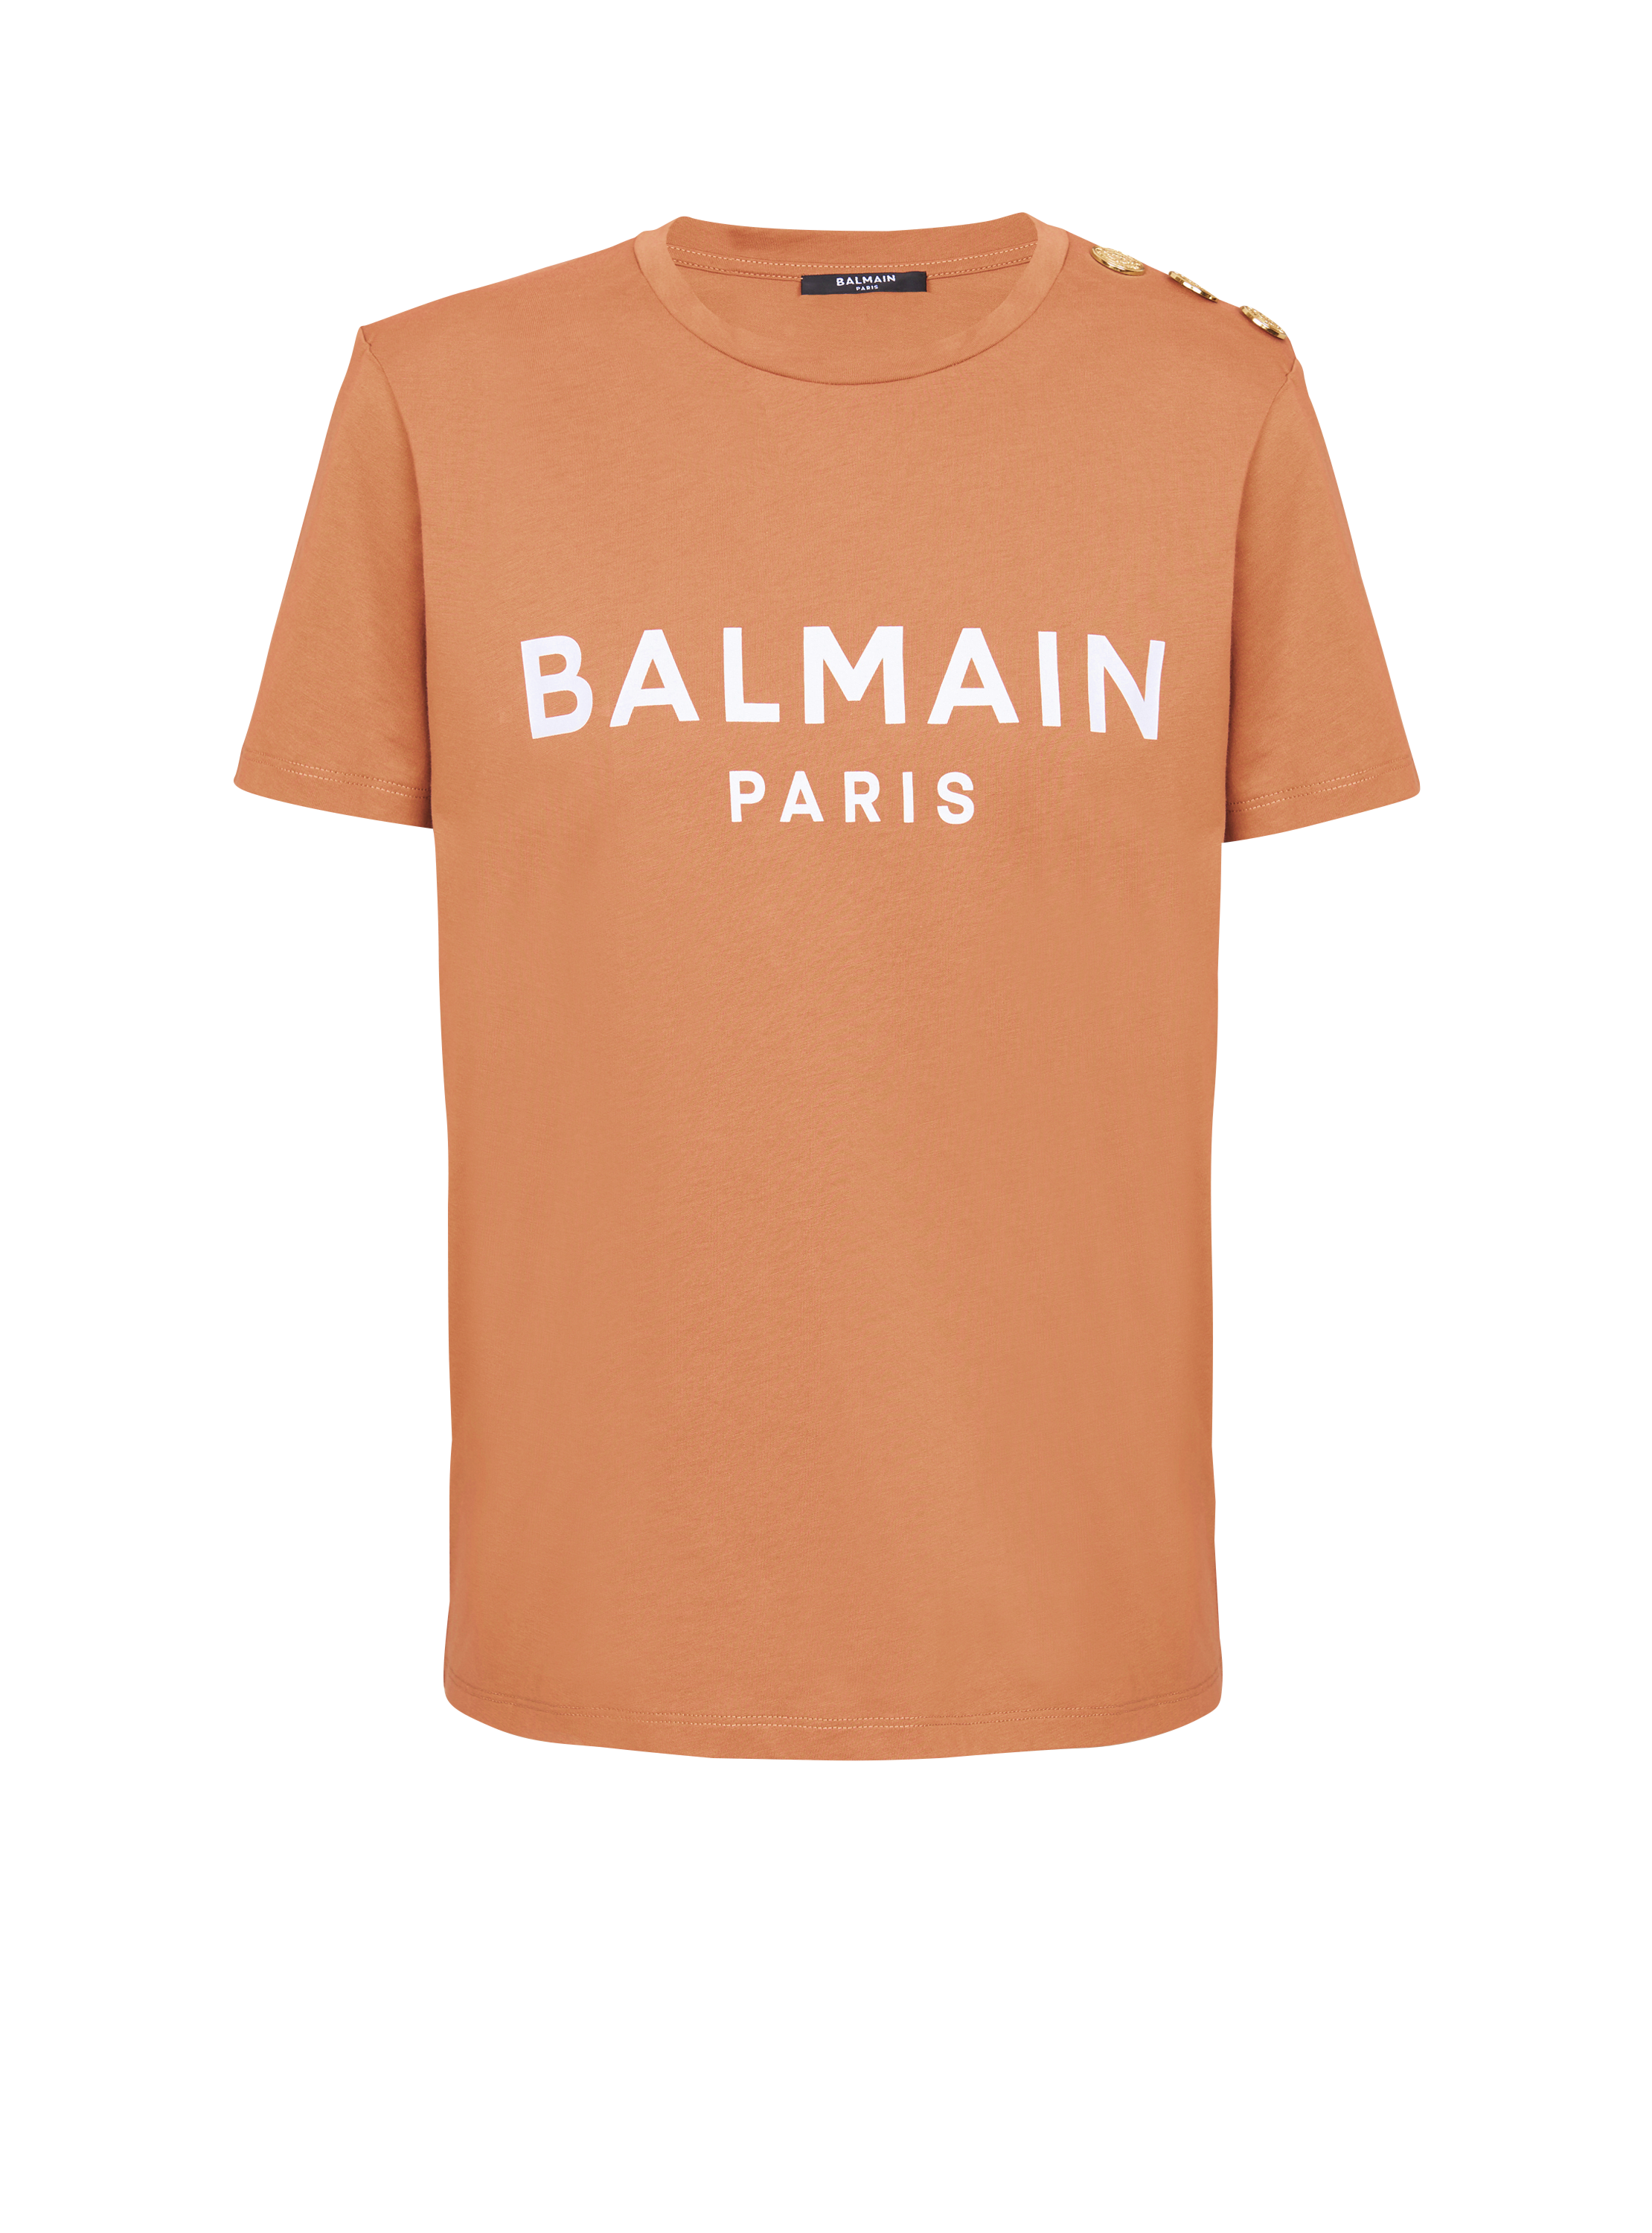 T-shirt boutonné à logo Balmain imprimé